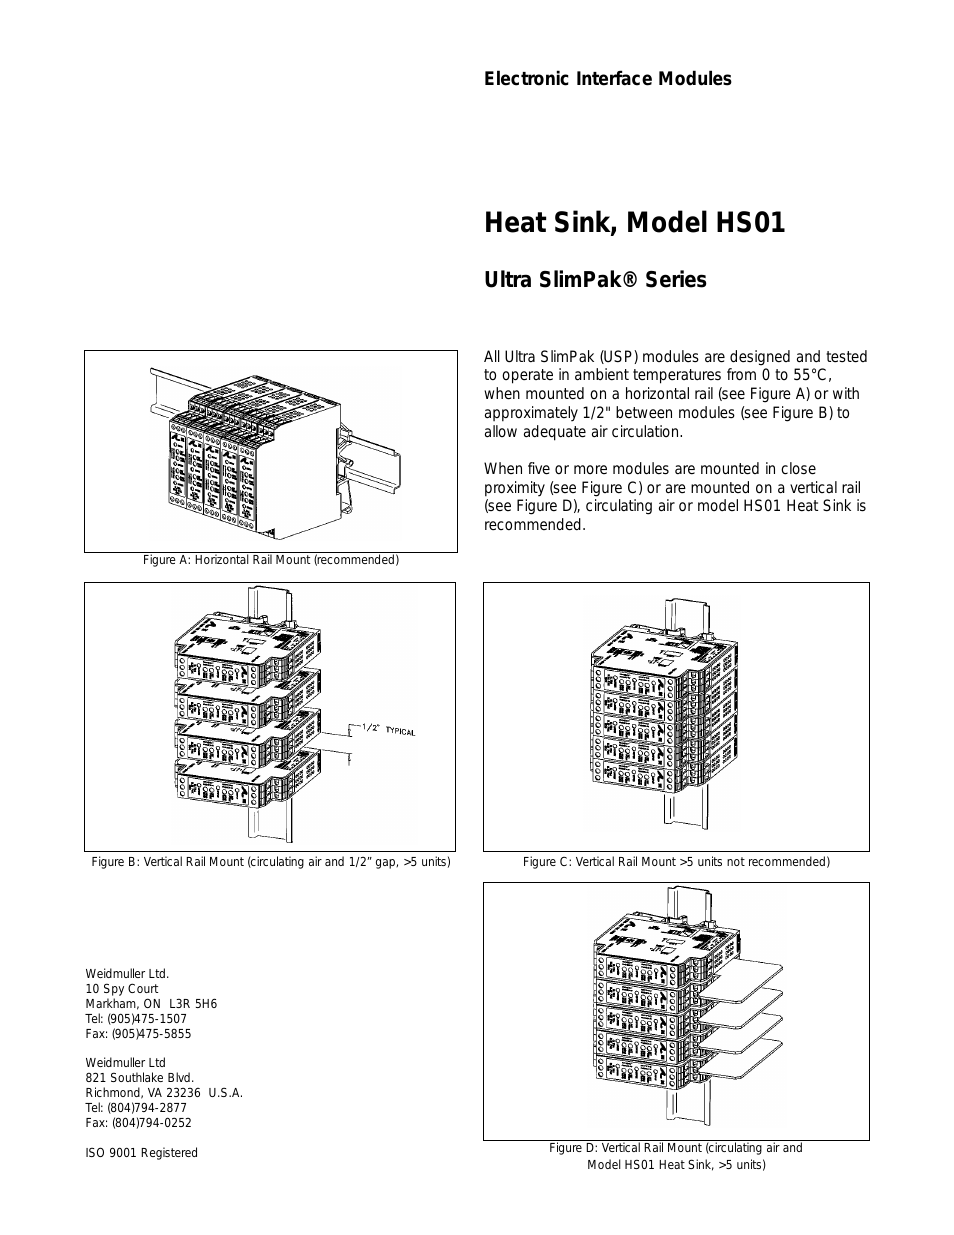 HS01 Heat Sink (Ultra SlimPak series)